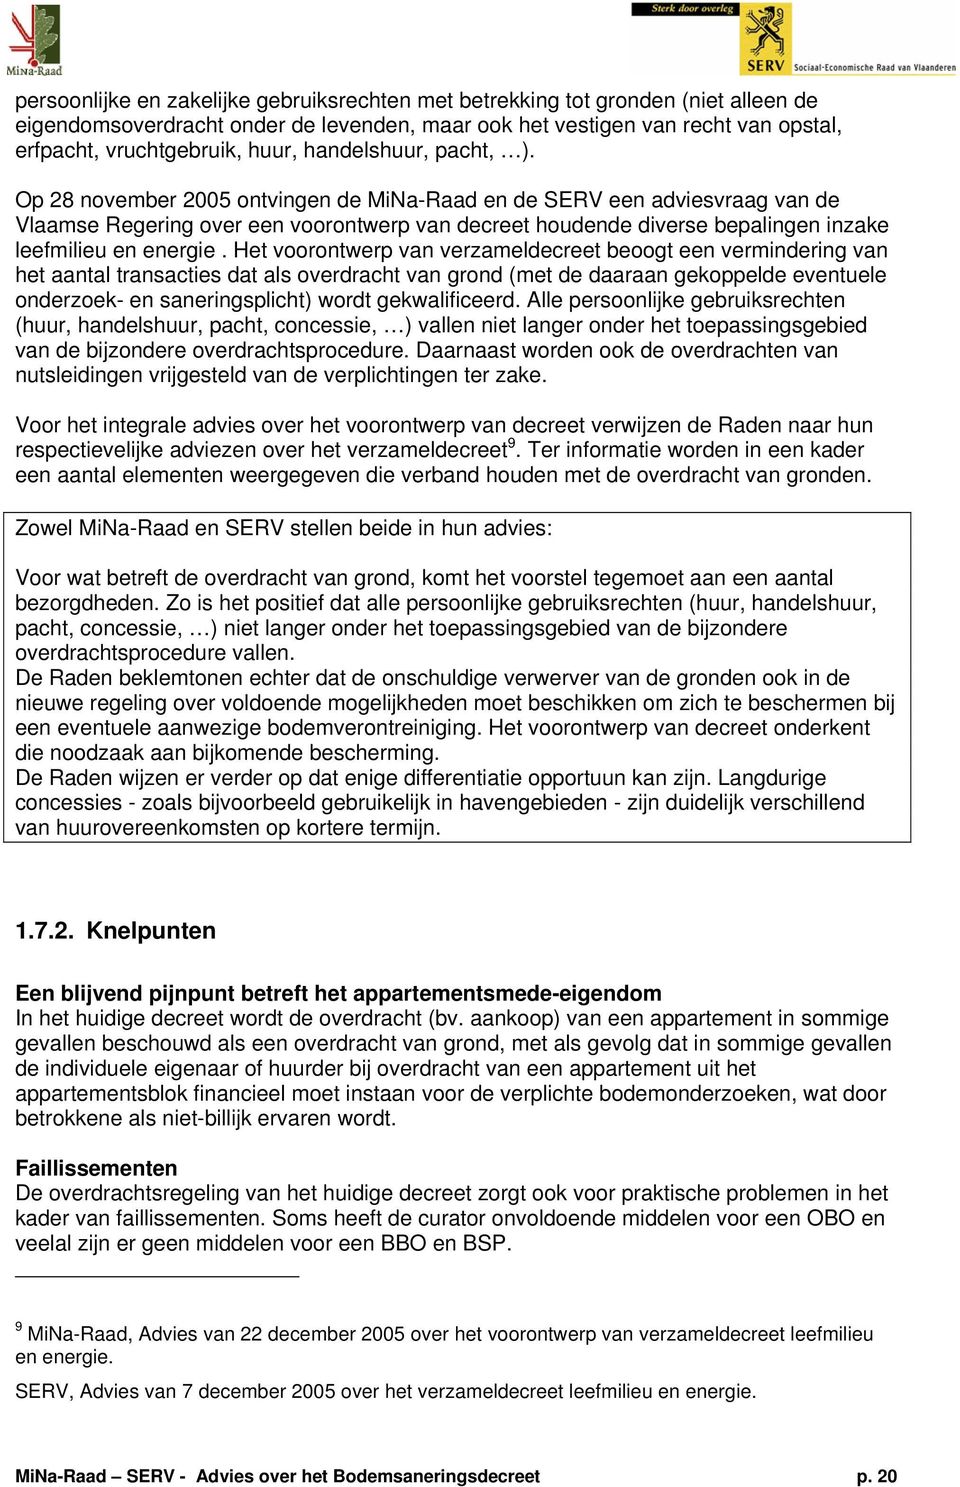 Op 28 november 2005 ontvingen de MiNa-Raad en de SERV een adviesvraag van de Vlaamse Regering over een voorontwerp van decreet houdende diverse bepalingen inzake leefmilieu en energie.